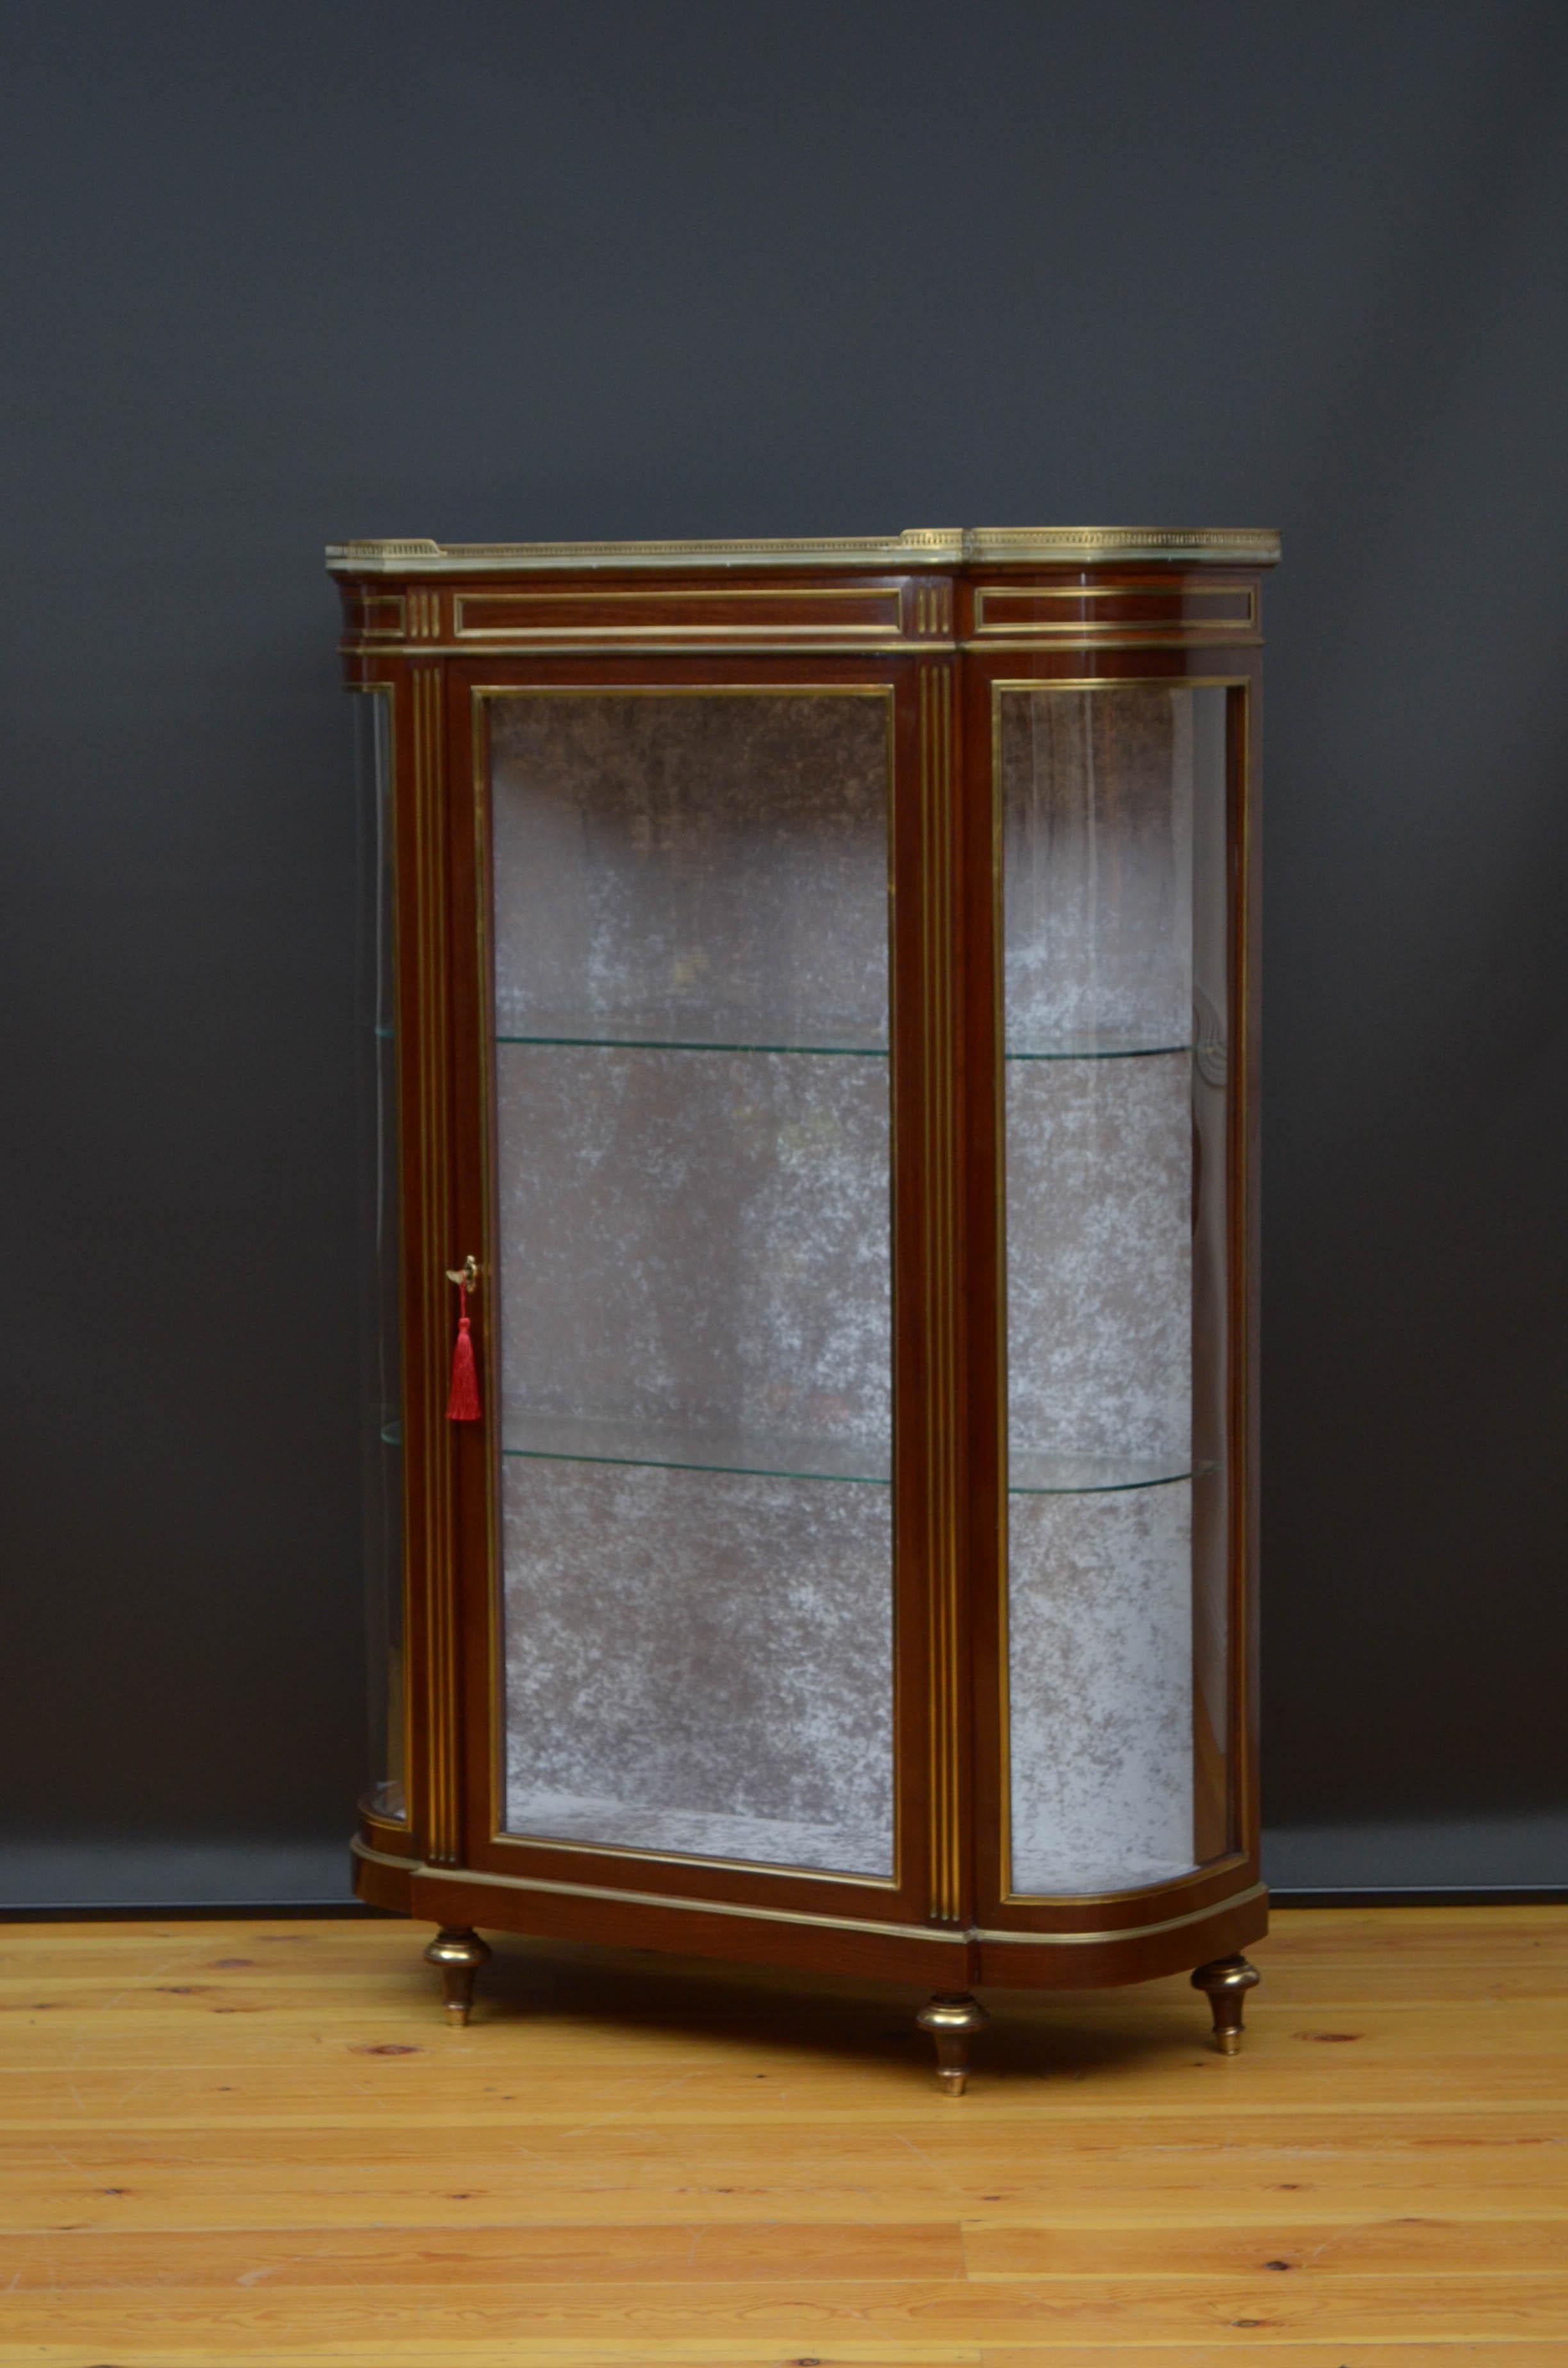 Sn5132, très élégante vitrine d'exposition du XIXe siècle, présentant une galerie d'origine en laiton et un dessus en marbre veiné au-dessus d'une frise incrustée de laiton et d'une porte vitrée munie d'une serrure d'origine et d'une clé, et